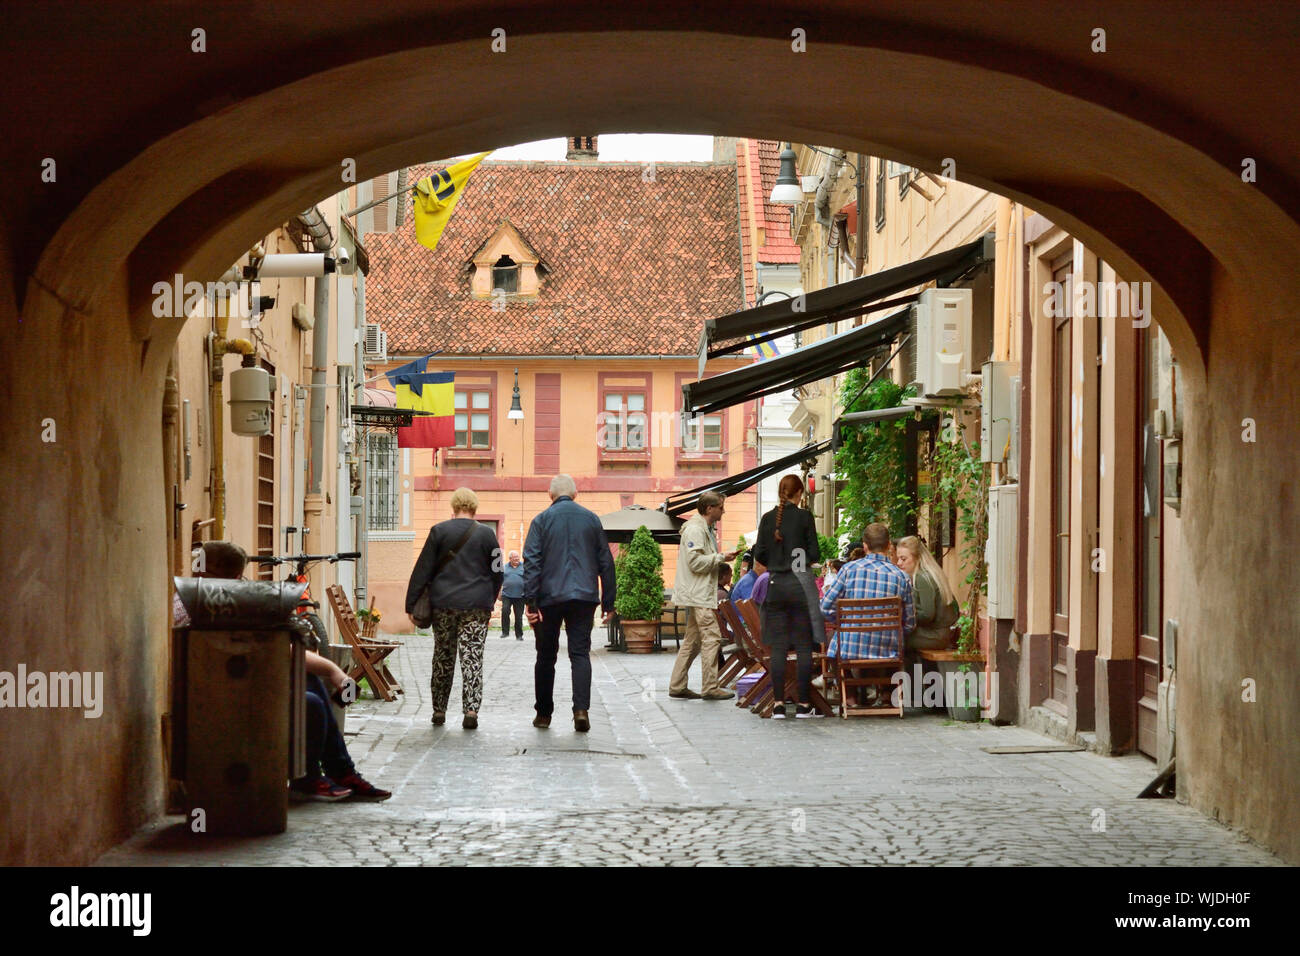 Via medievale nel centro storico della città. Brasov, Romania Foto Stock